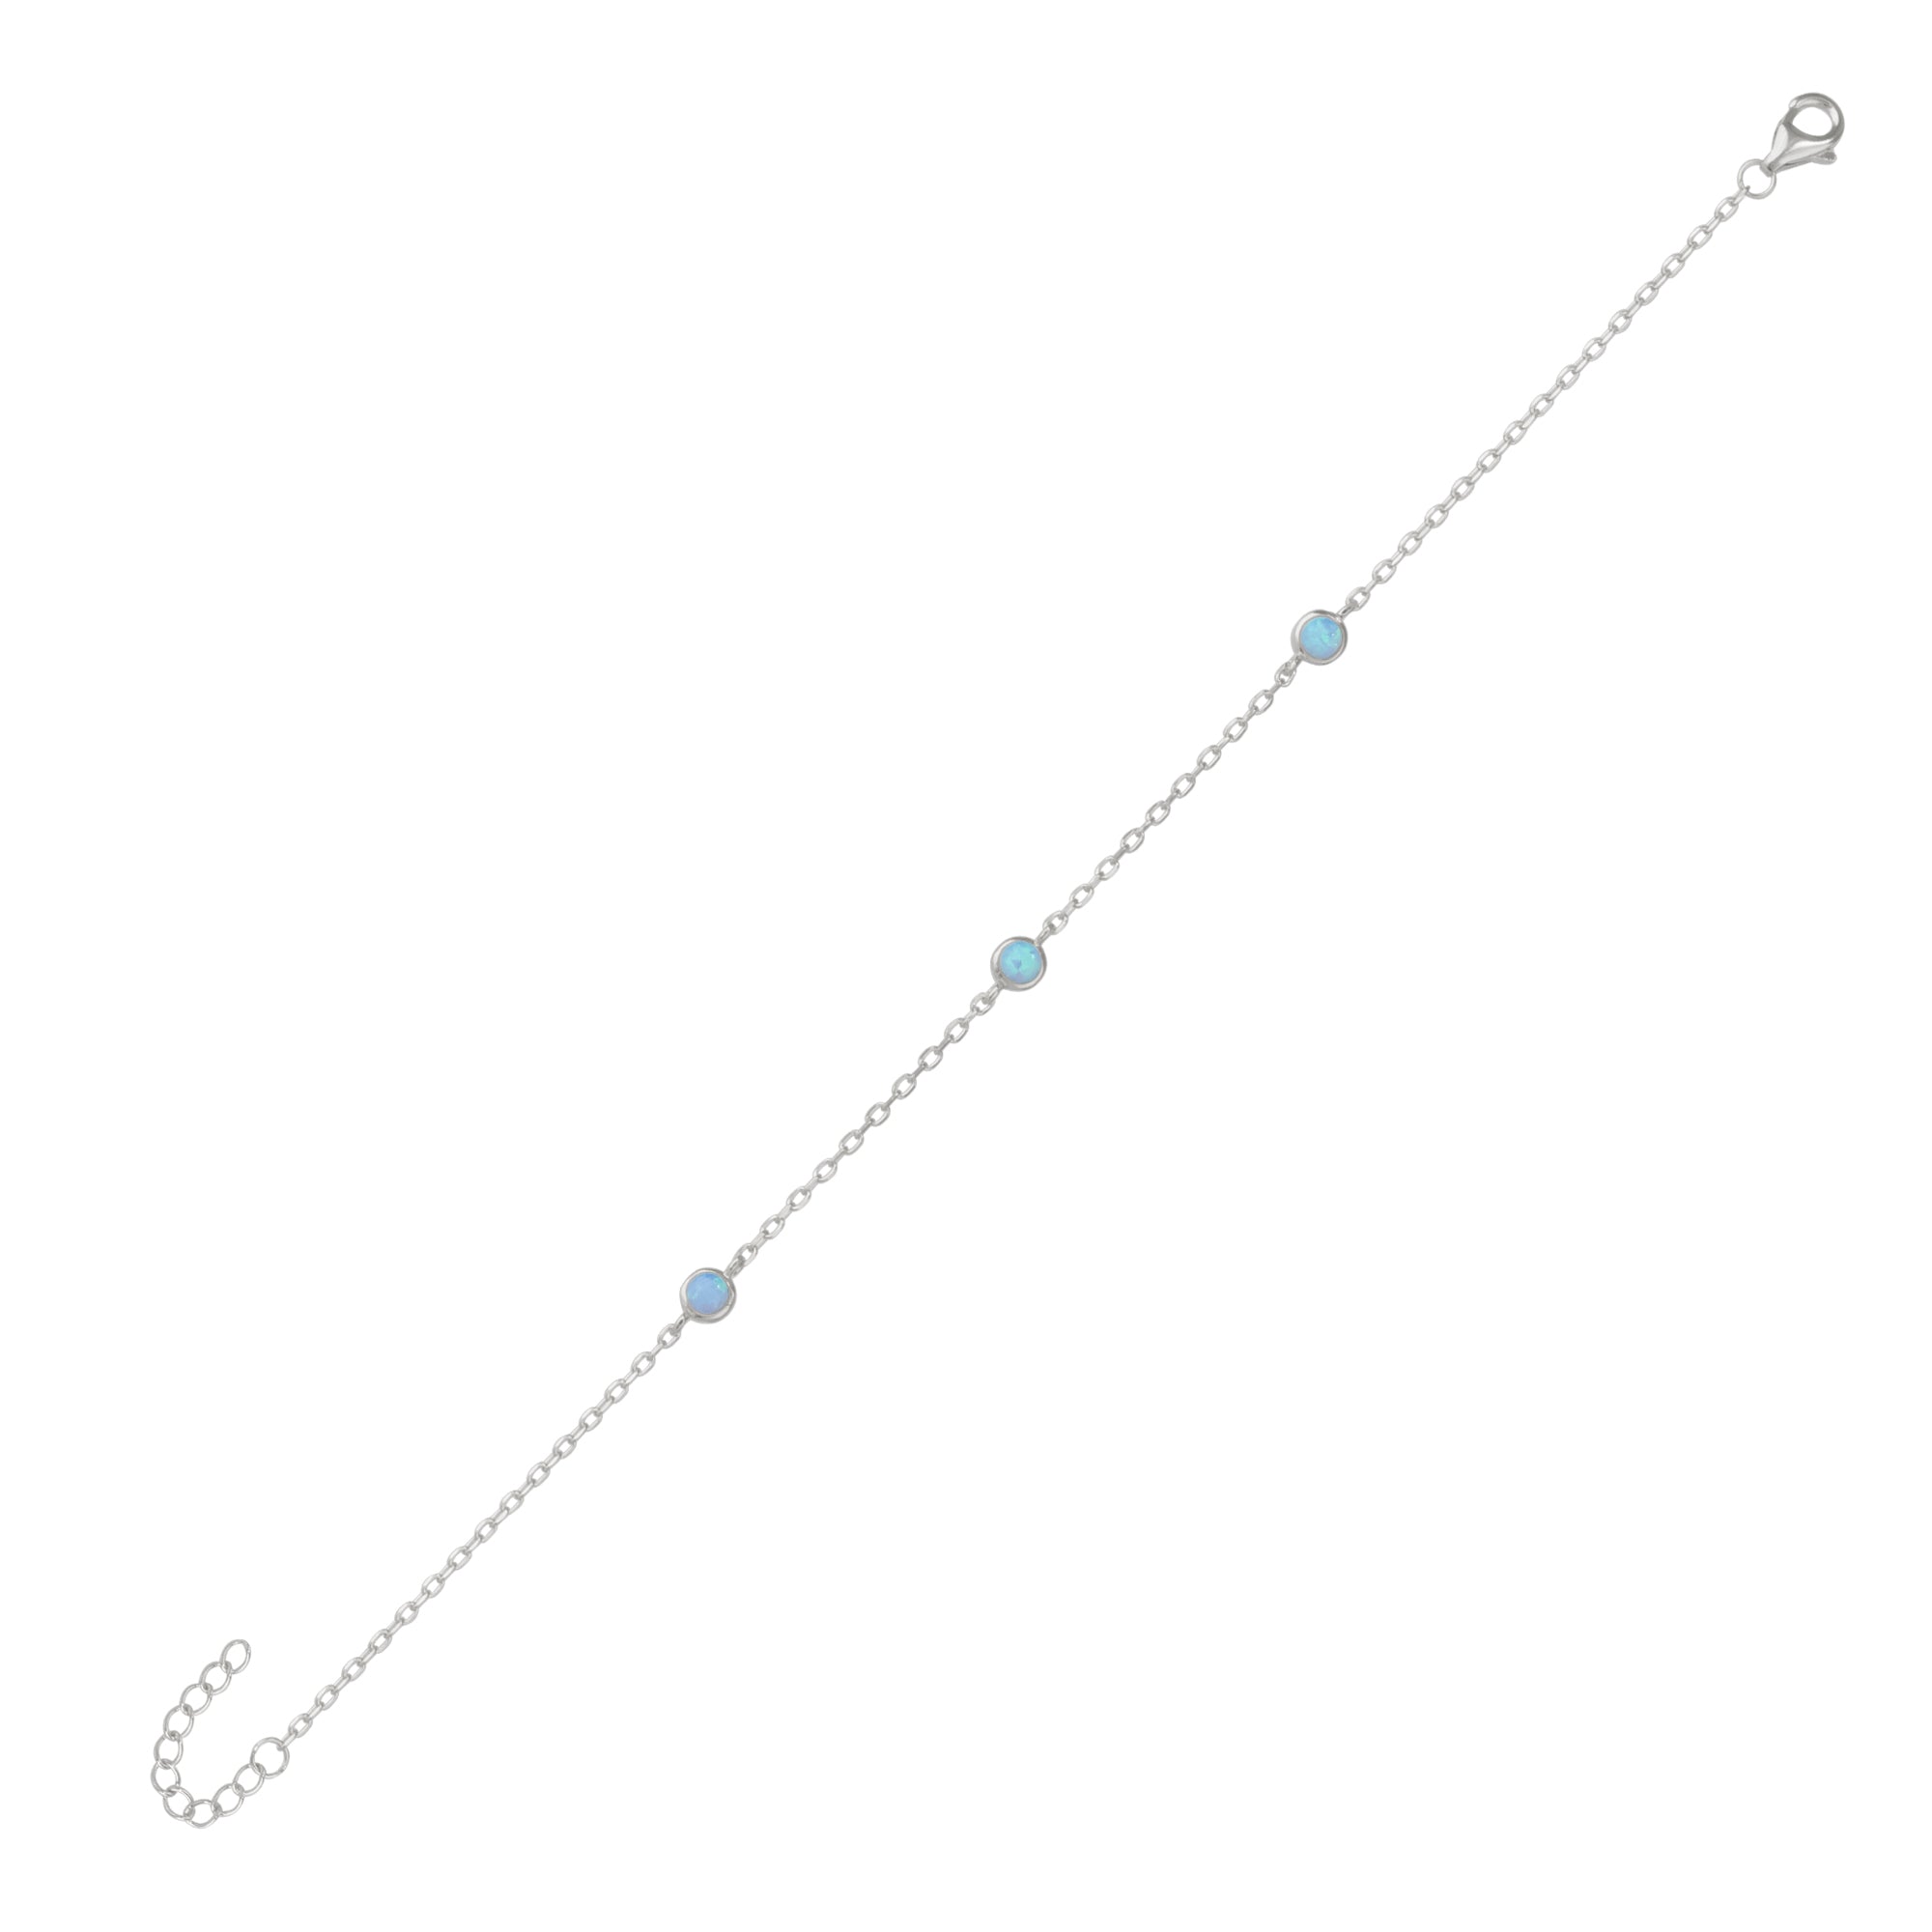 Blue Opal Bracelet in Sterling Silver